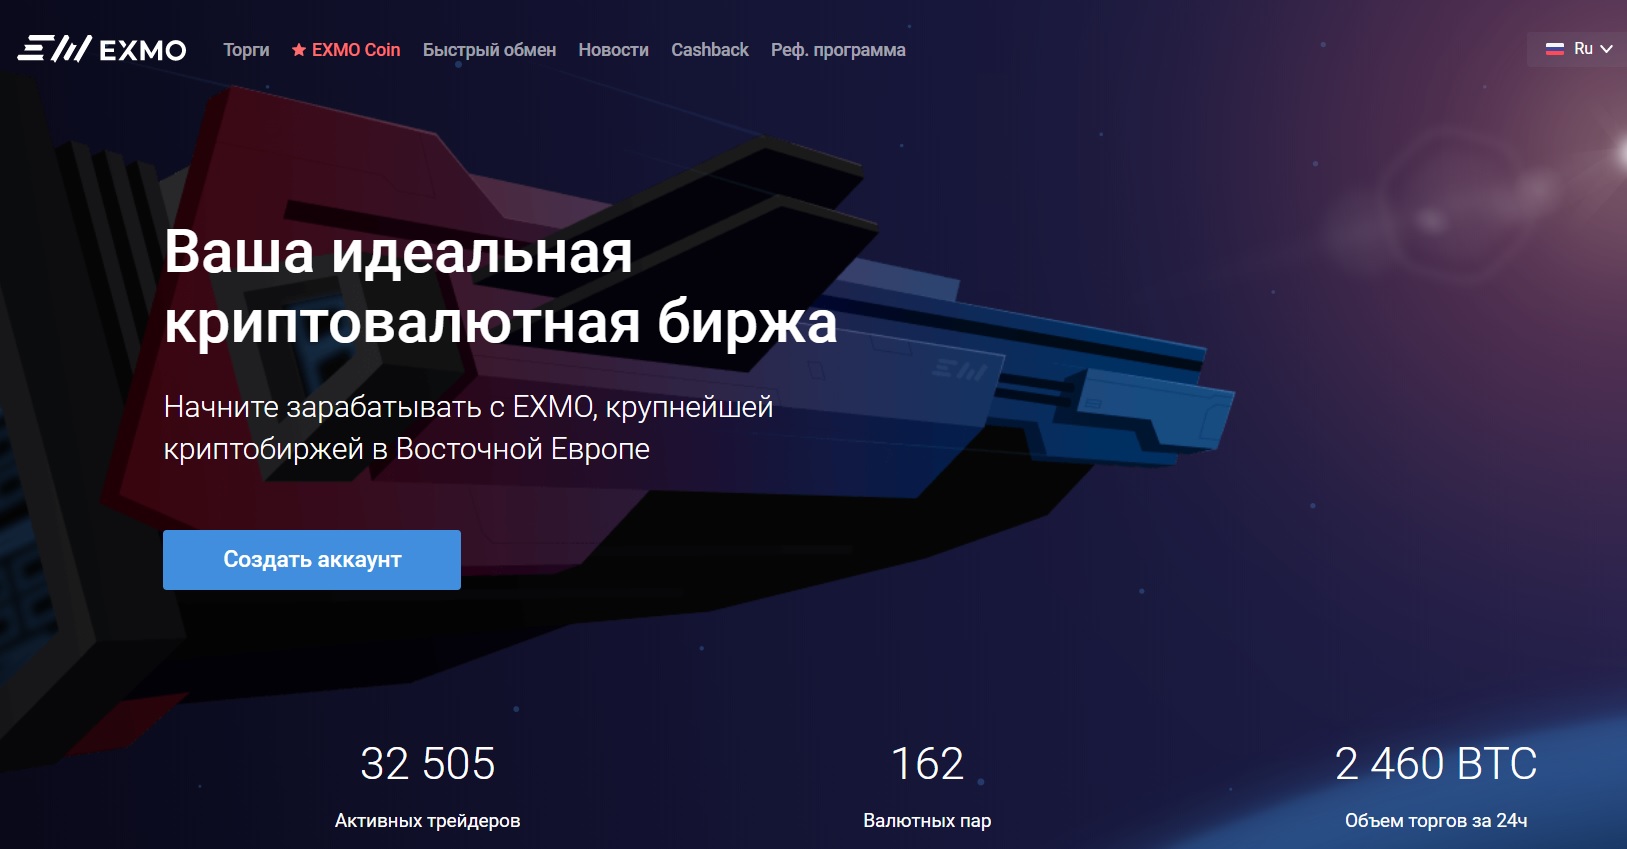 ТОП-3 криптобирж в 2019 году для русскоязычного трейдера